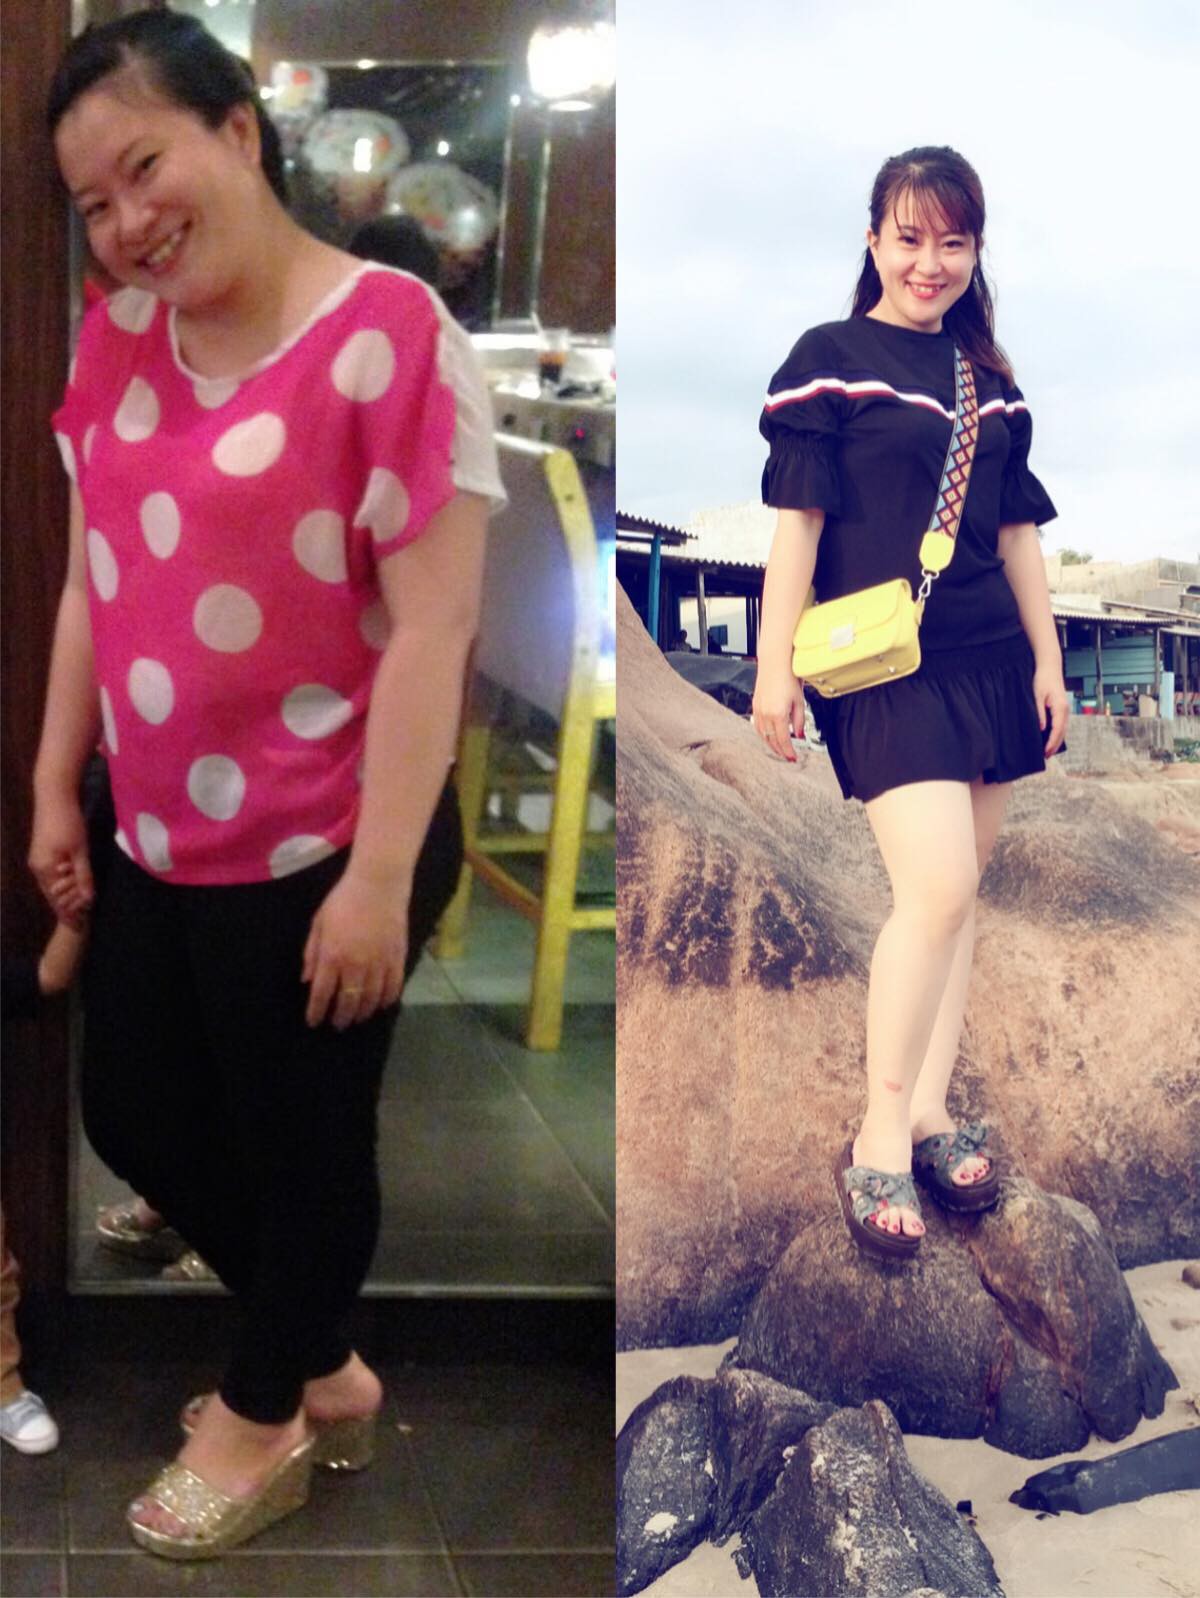 Mua quần áo bị nói không có size của chị đâu, cô gái quyết tâm giảm 14kg trong 3 tháng và cái kết mĩ mãn - Ảnh 2.